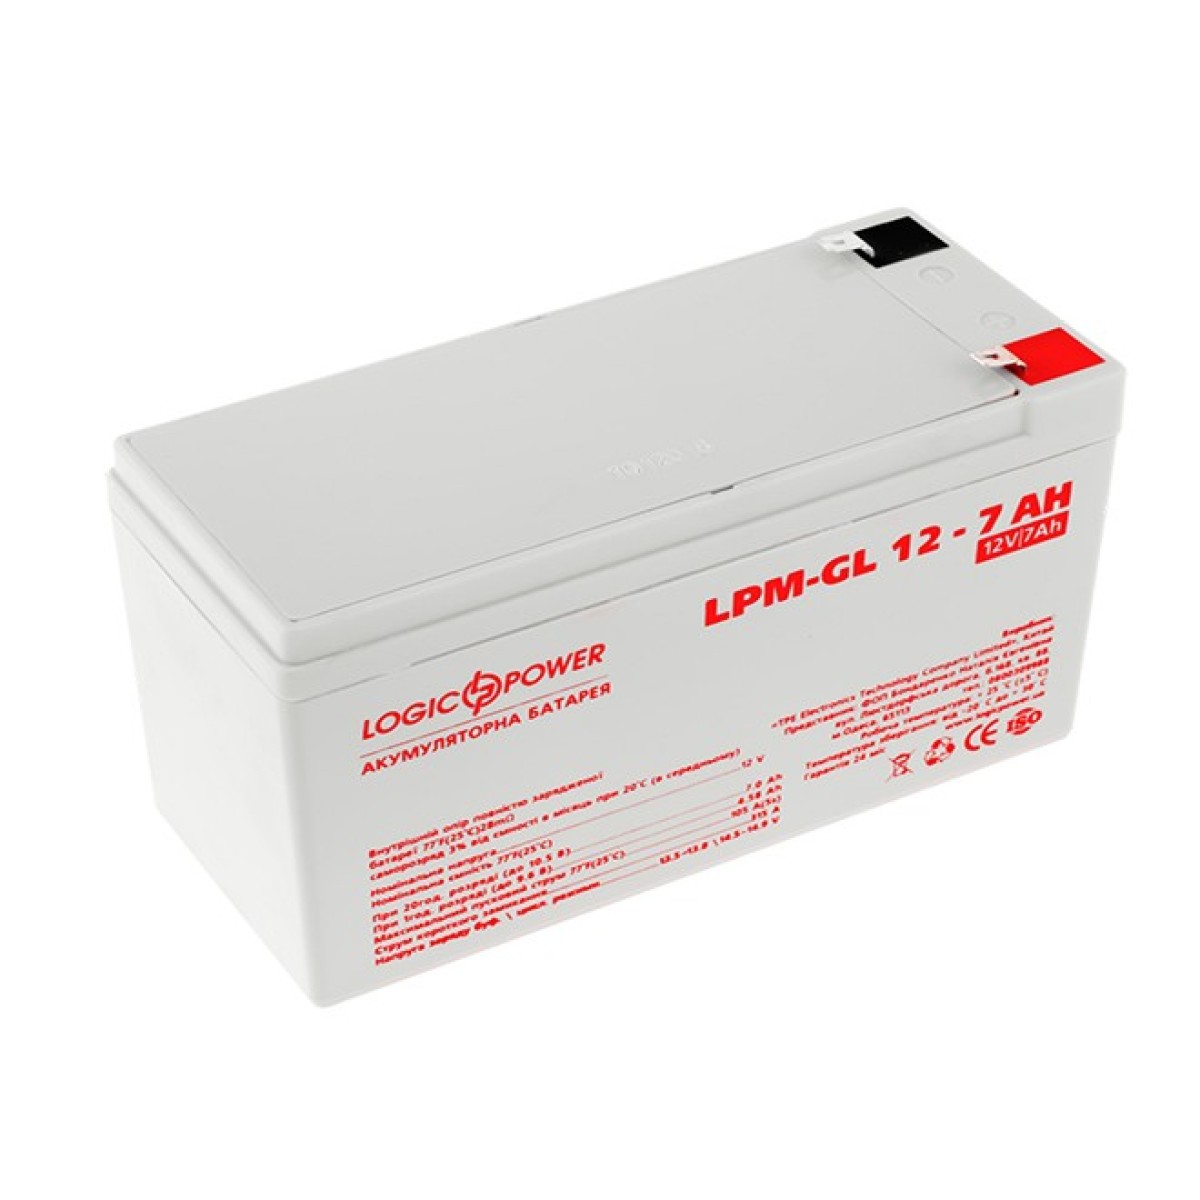 Аккумулятор гелевый LPM-GL 12 - 7 AH 256_256.jpg